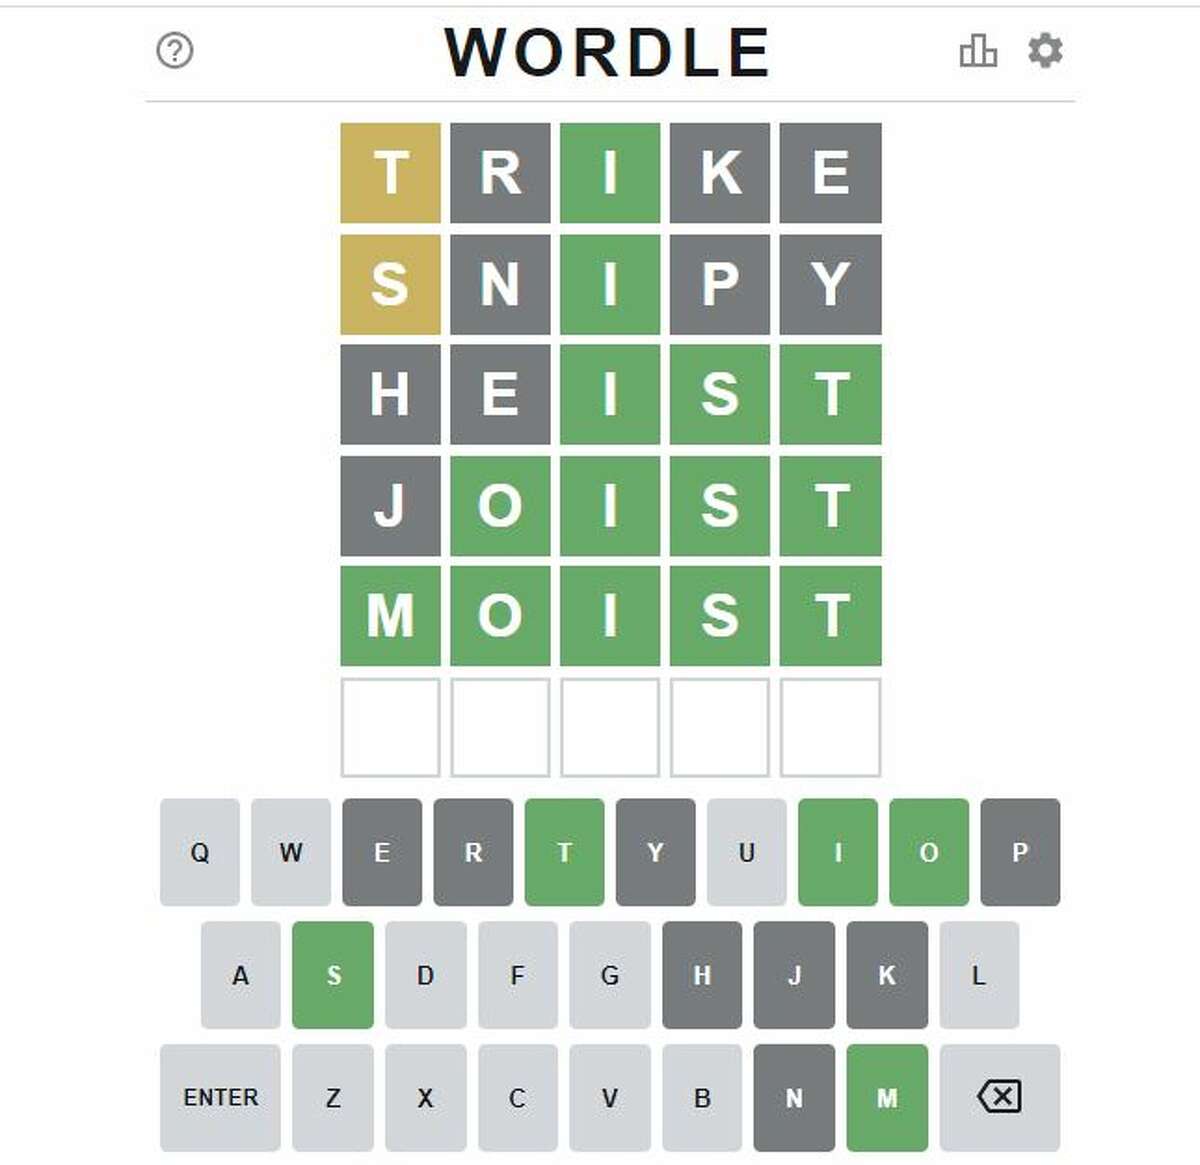 Câu chuyện đằng sau Wordle – trò chơi từ vựng trực tuyến đang gây sốt là một câu chuyện đáng để lắng nghe. Được tạo ra bởi một người chơi đơn giản, Wordle đã trở thành hiện tượng trên toàn thế giới. Hãy cùng lắng nghe câu chuyện đầy cảm hứng và thử sức với trò chơi này.